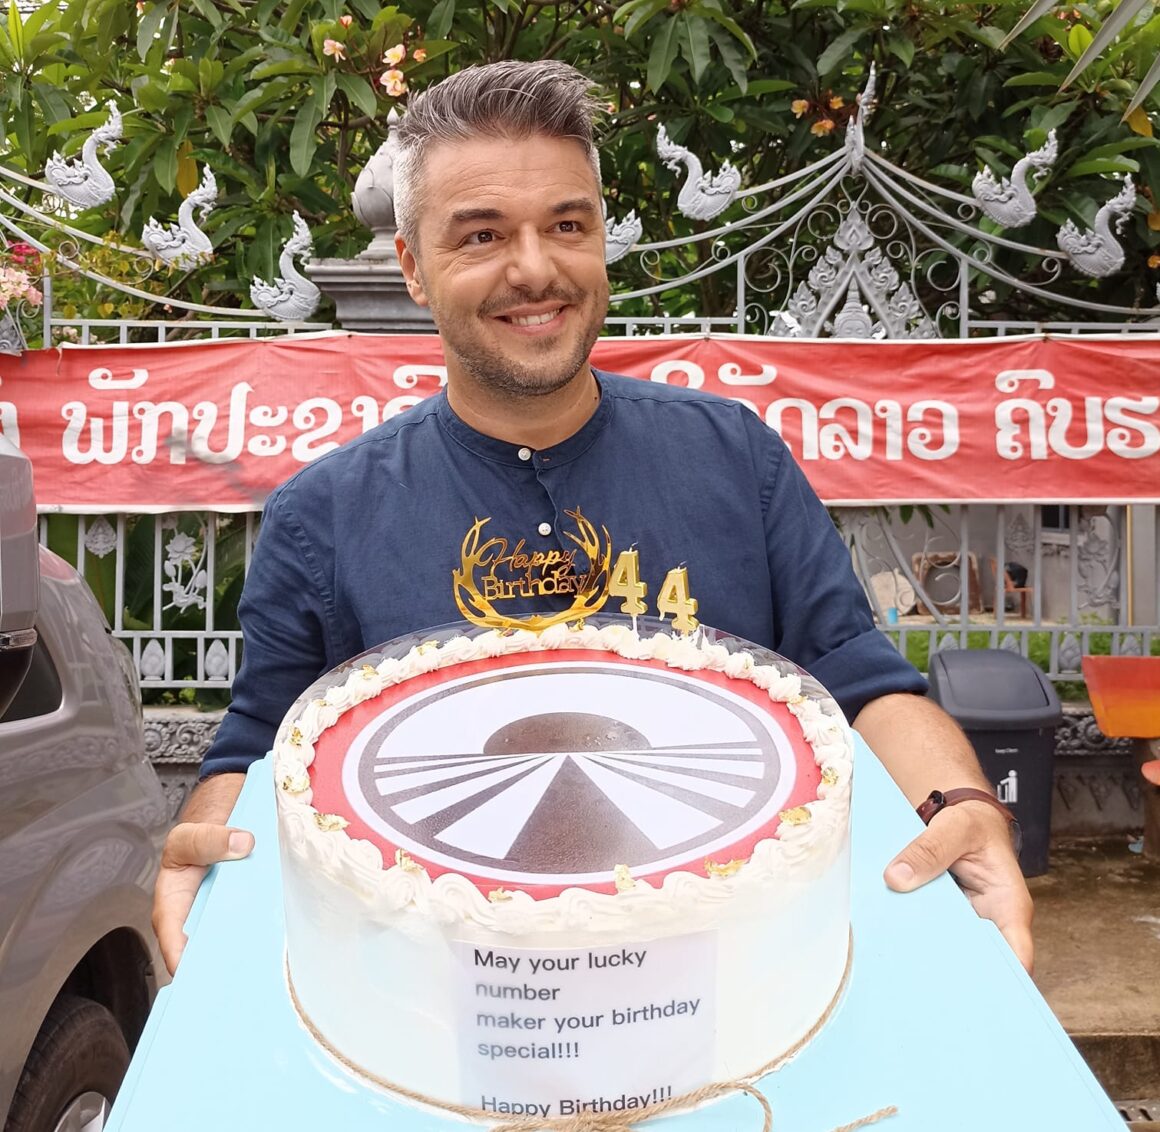 Πέτρος Πολυχρονίδης: Γενέθλια στο μακρινό Λάος – Η έκπληξη που του ετοίμασε η παραγωγή με 100 παιδάκια από ένα νηπιαγωγείο